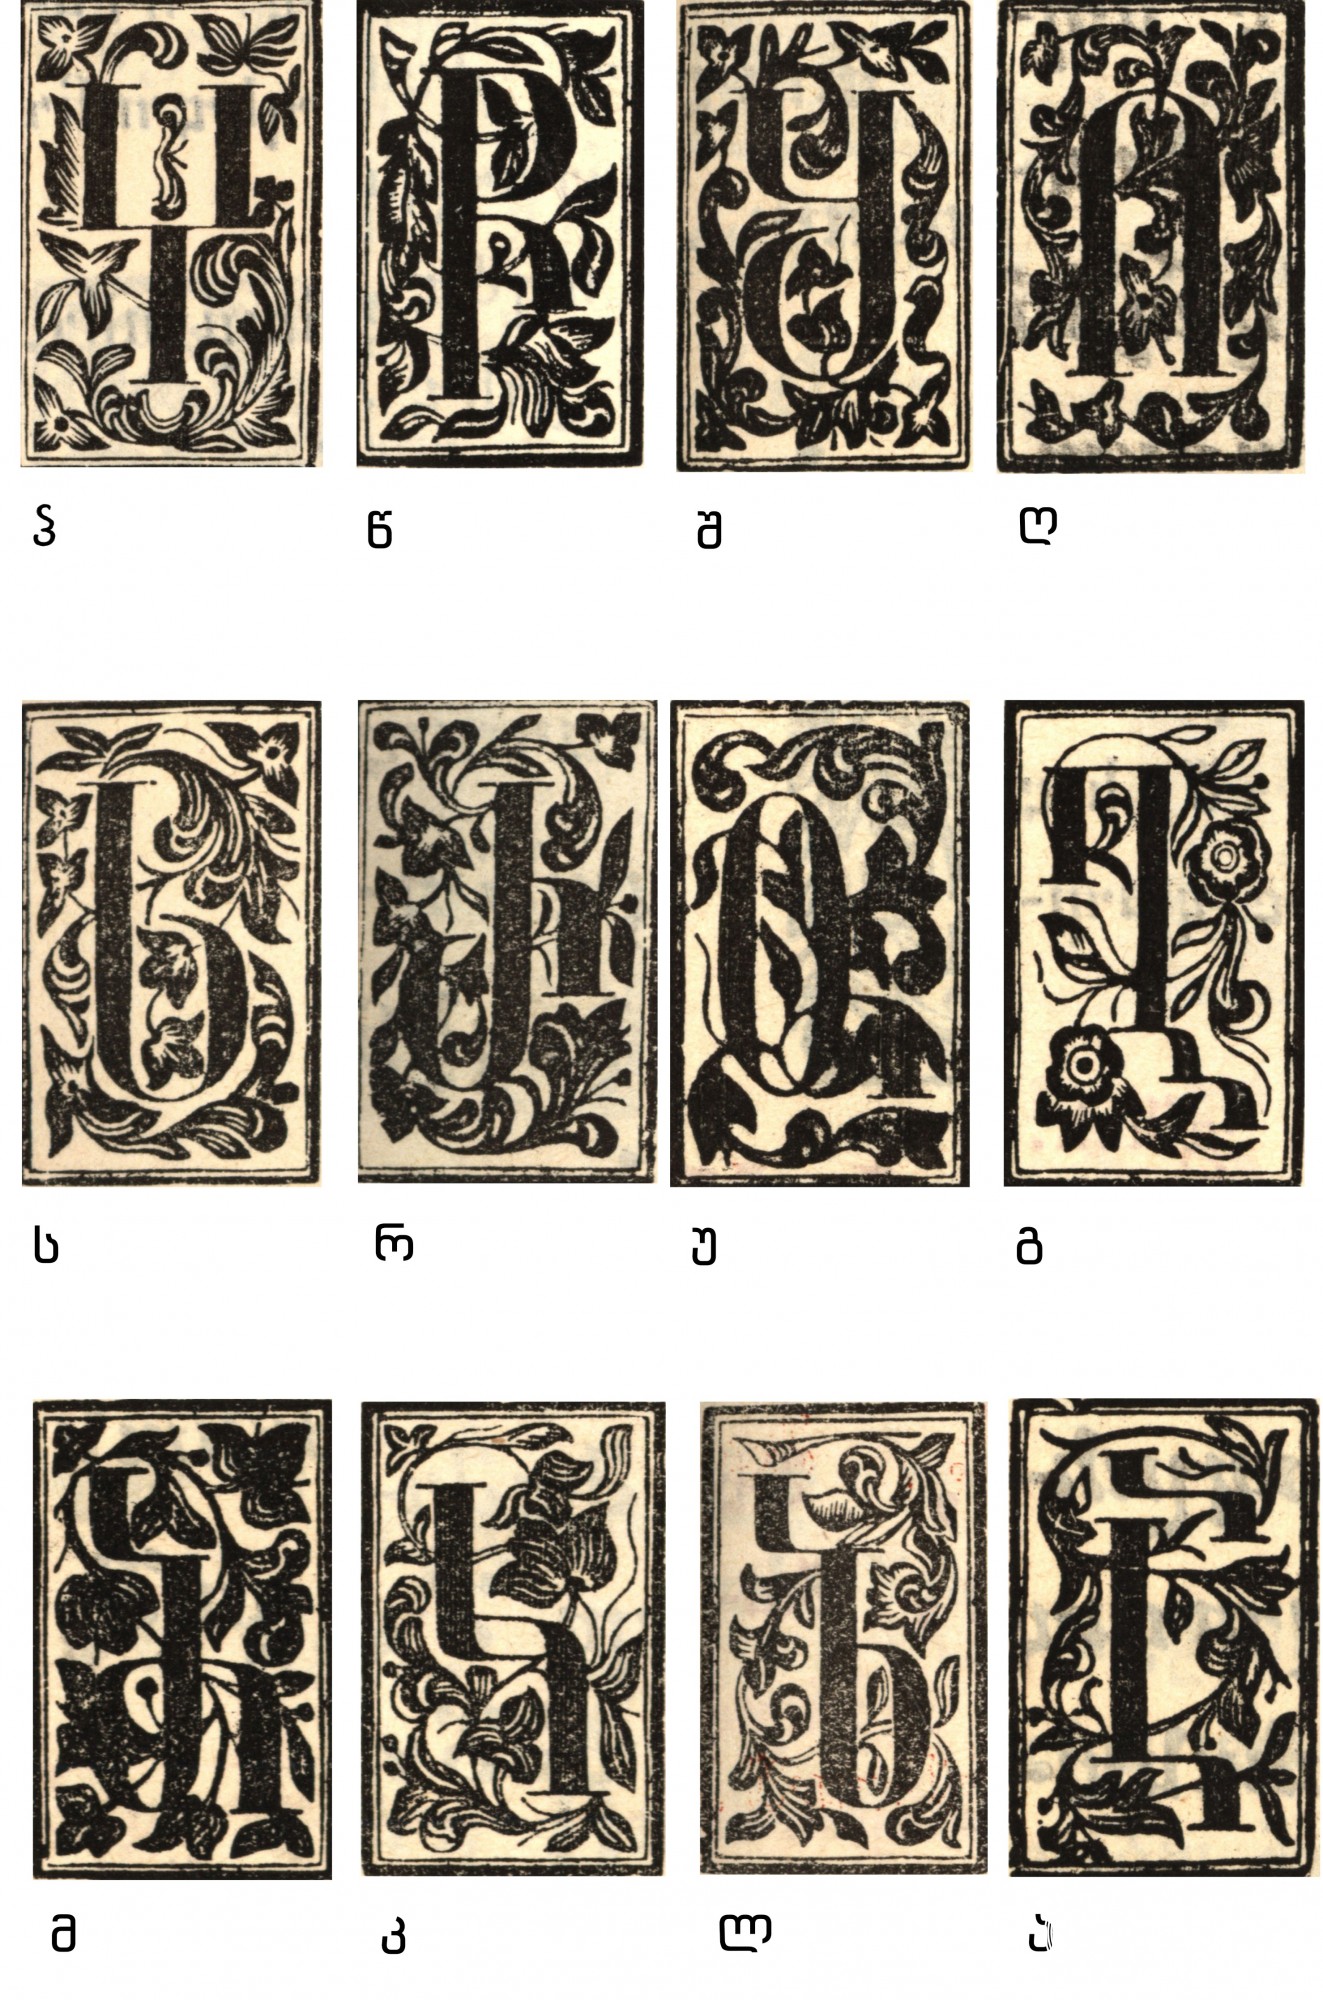 ერეკლე II-ის სტამბაში გამოცემულ წიგნებში გამოყენებული საზედაო გრაფემები <br>
ტფილისი, 1749-1795 <br>
Capital Graphemes used in the Books published in Erekle’s Printing House <br>
Tfilisi, 1749-1795